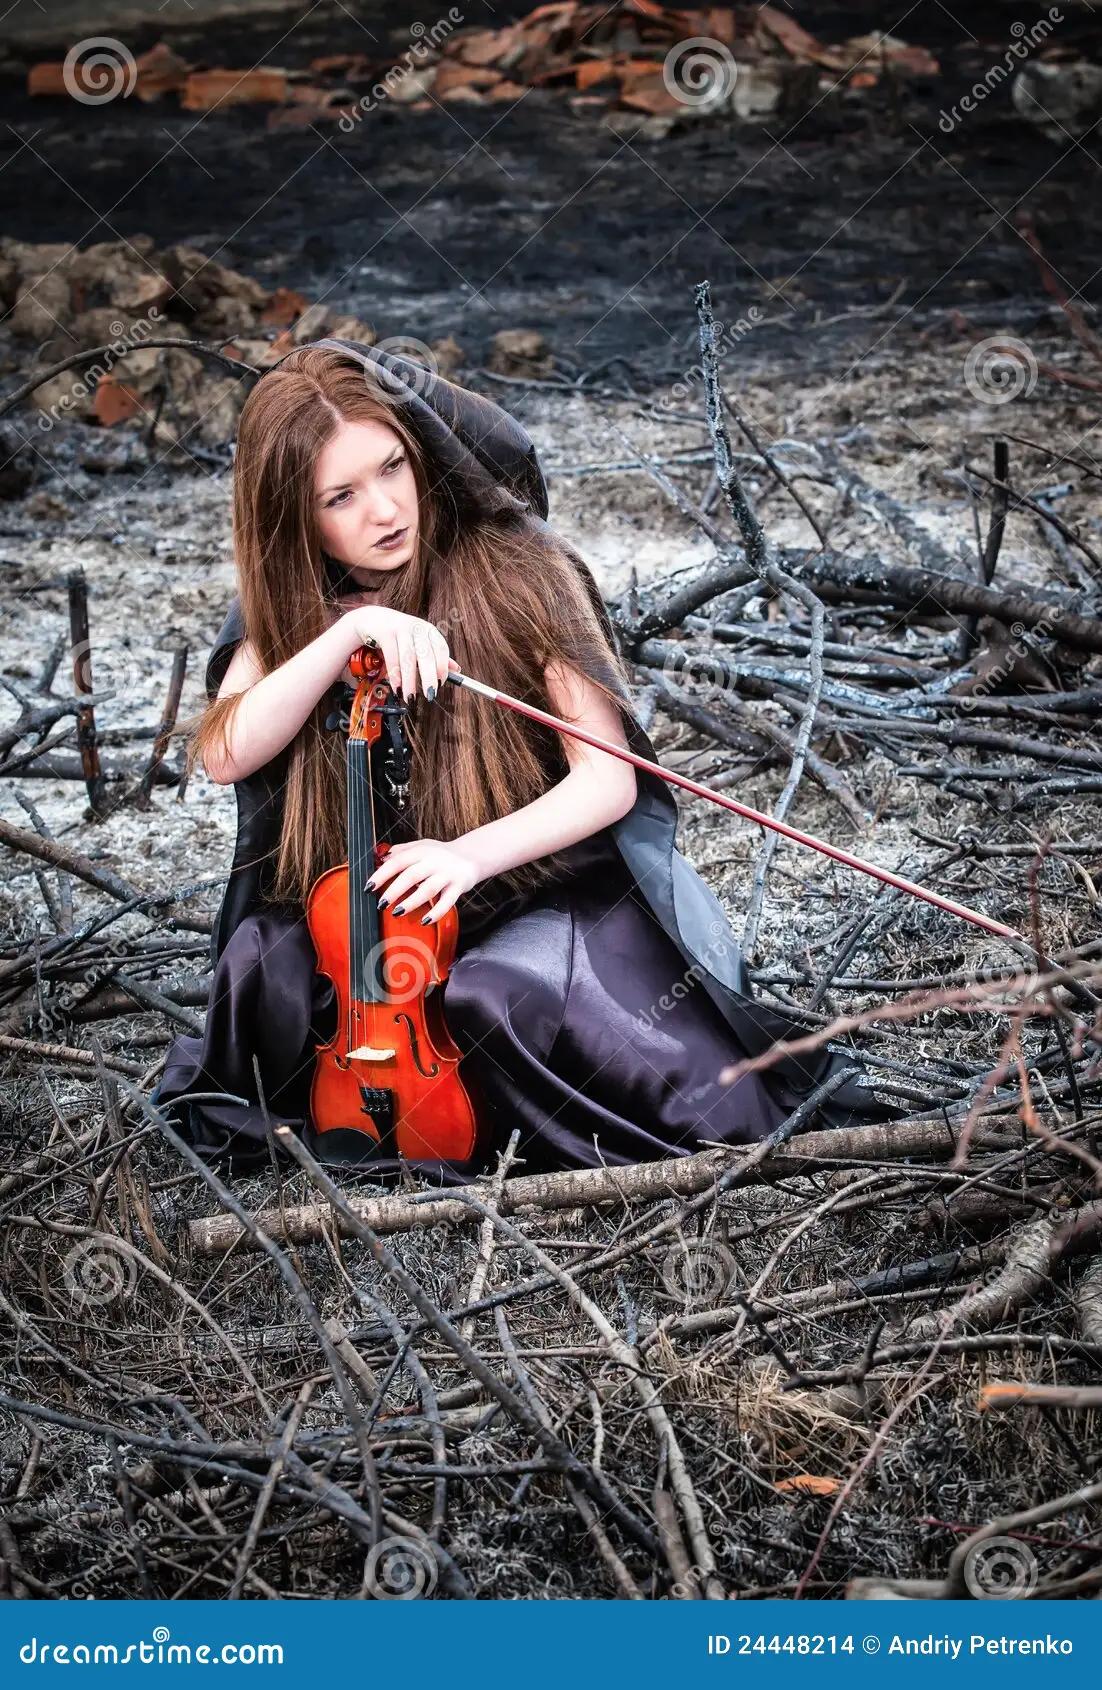 peliroja con violin - Quién es la violinista pelirroja de Celtic Woman